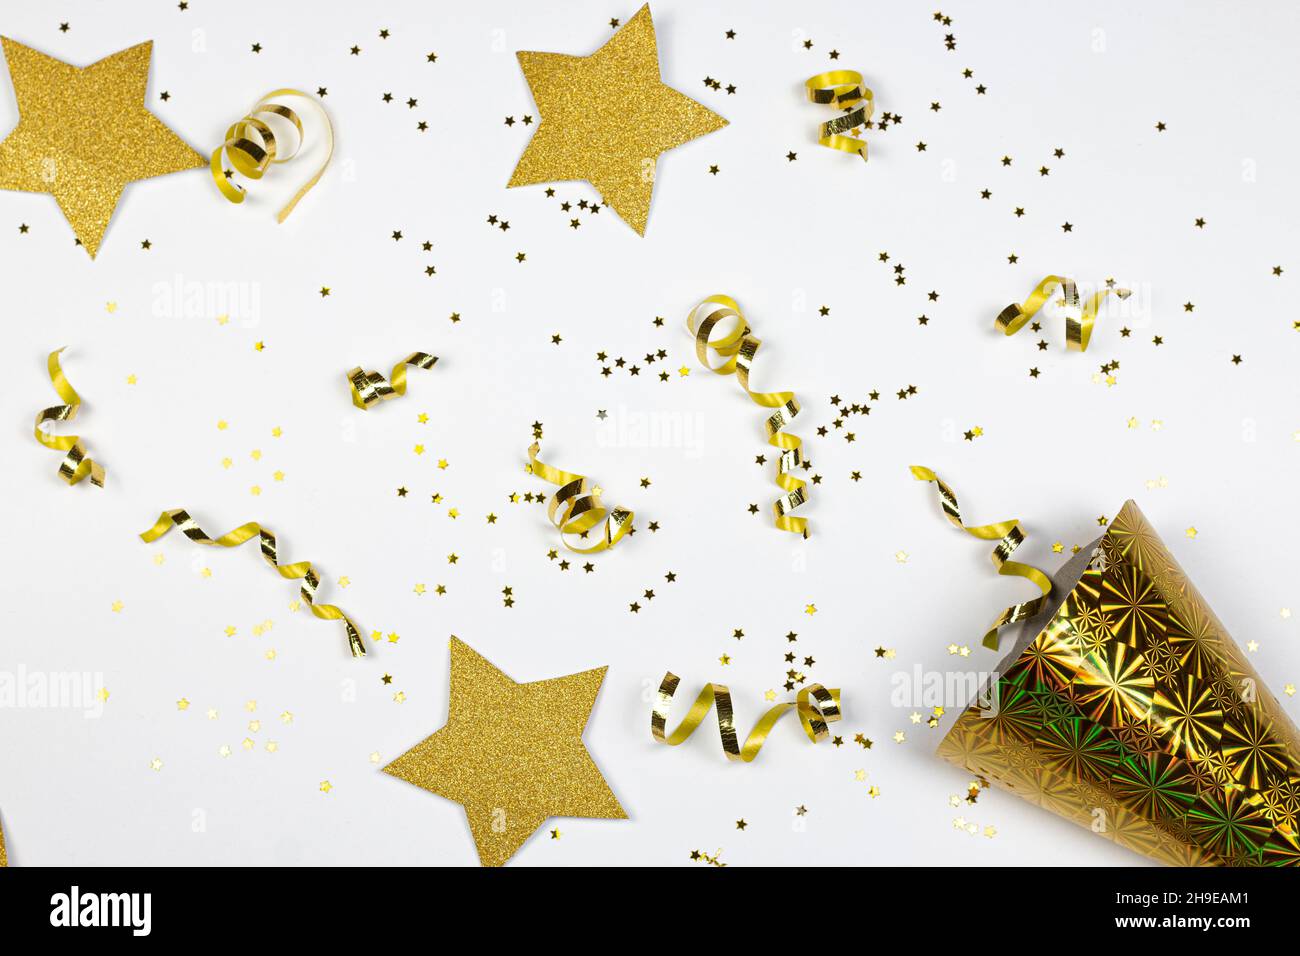 Étoiles scintillantes, confettis dorés et chapeau de fête en papier jaune sur fond blanc.Pose à plat.Concept de fête. Banque D'Images